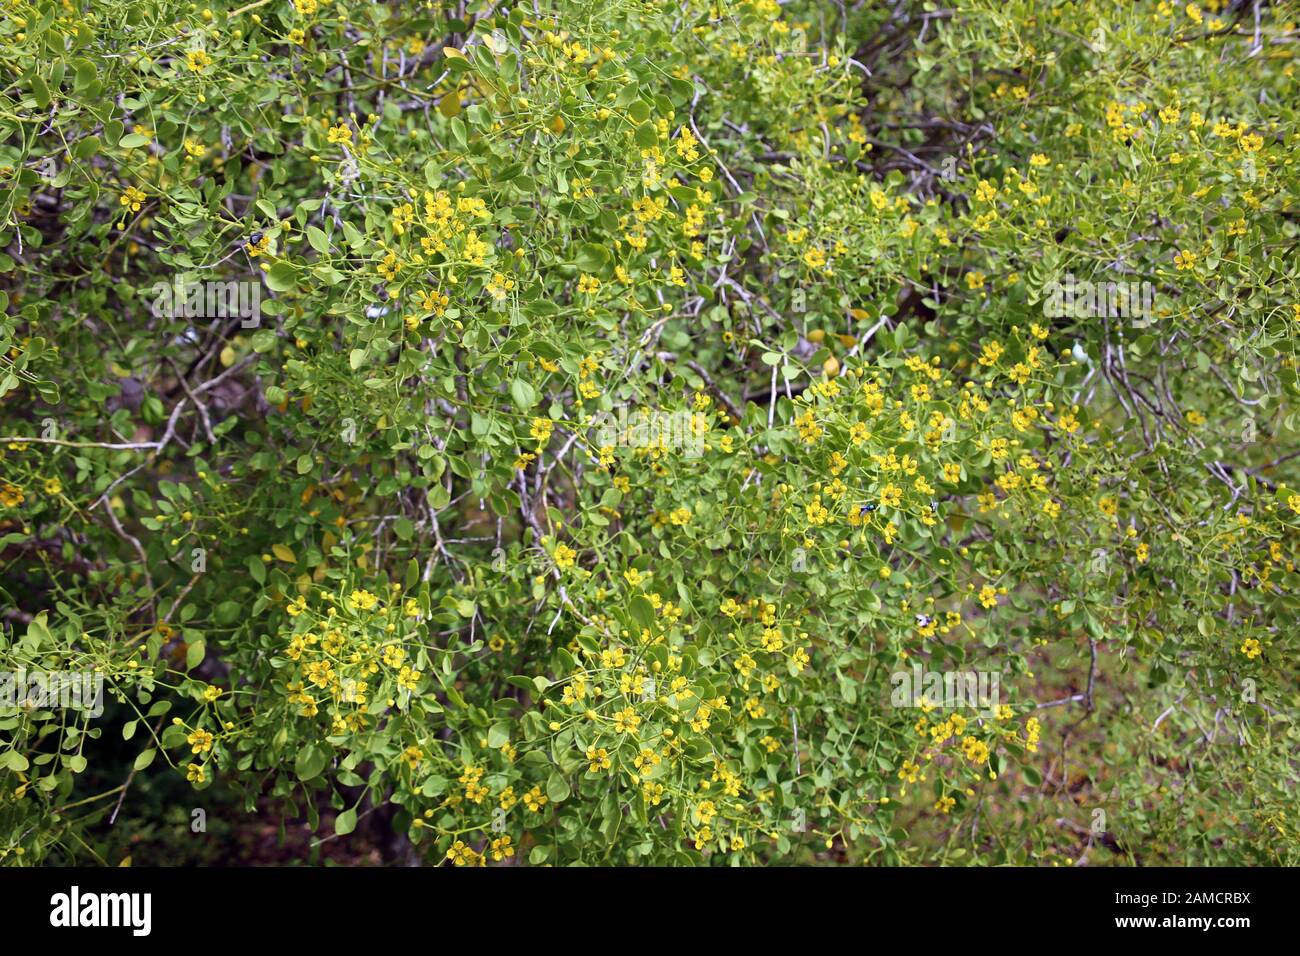 Gefiederte Raute Ruta pinnata - Garten mit endemischen Pflanzen im Besucherzentrum Nationalpark Caldera de Taburiente, El Paso, la Palma, Kanarische i Foto Stock